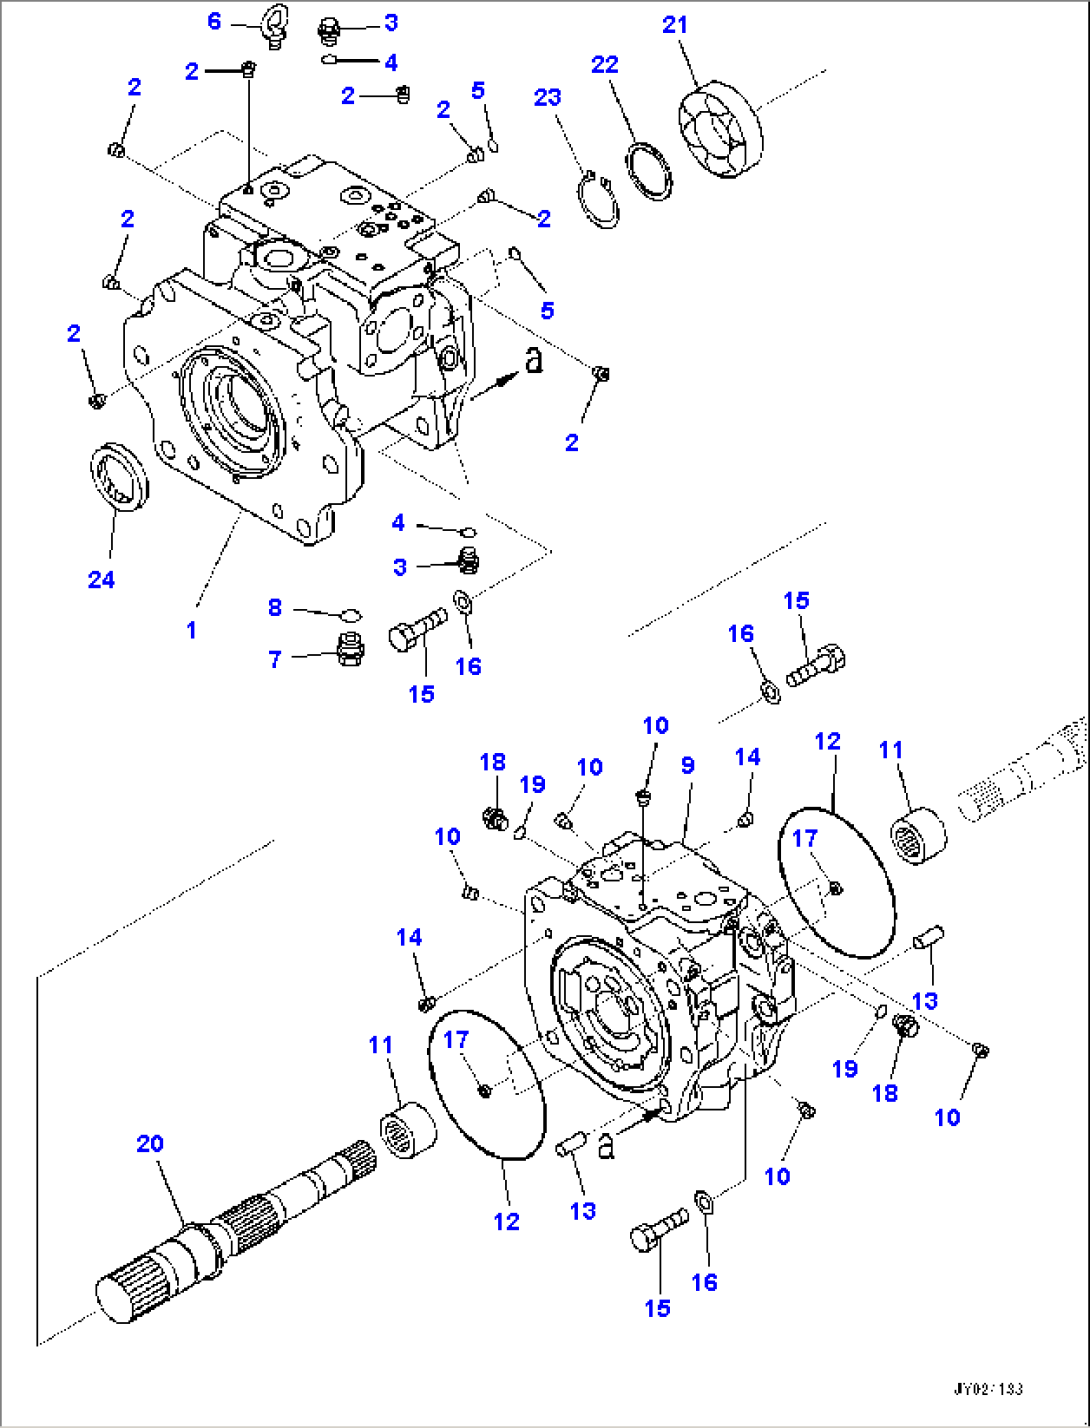 Pipelayer Frame, Work Equipment Pump (1/9) (#15479-)